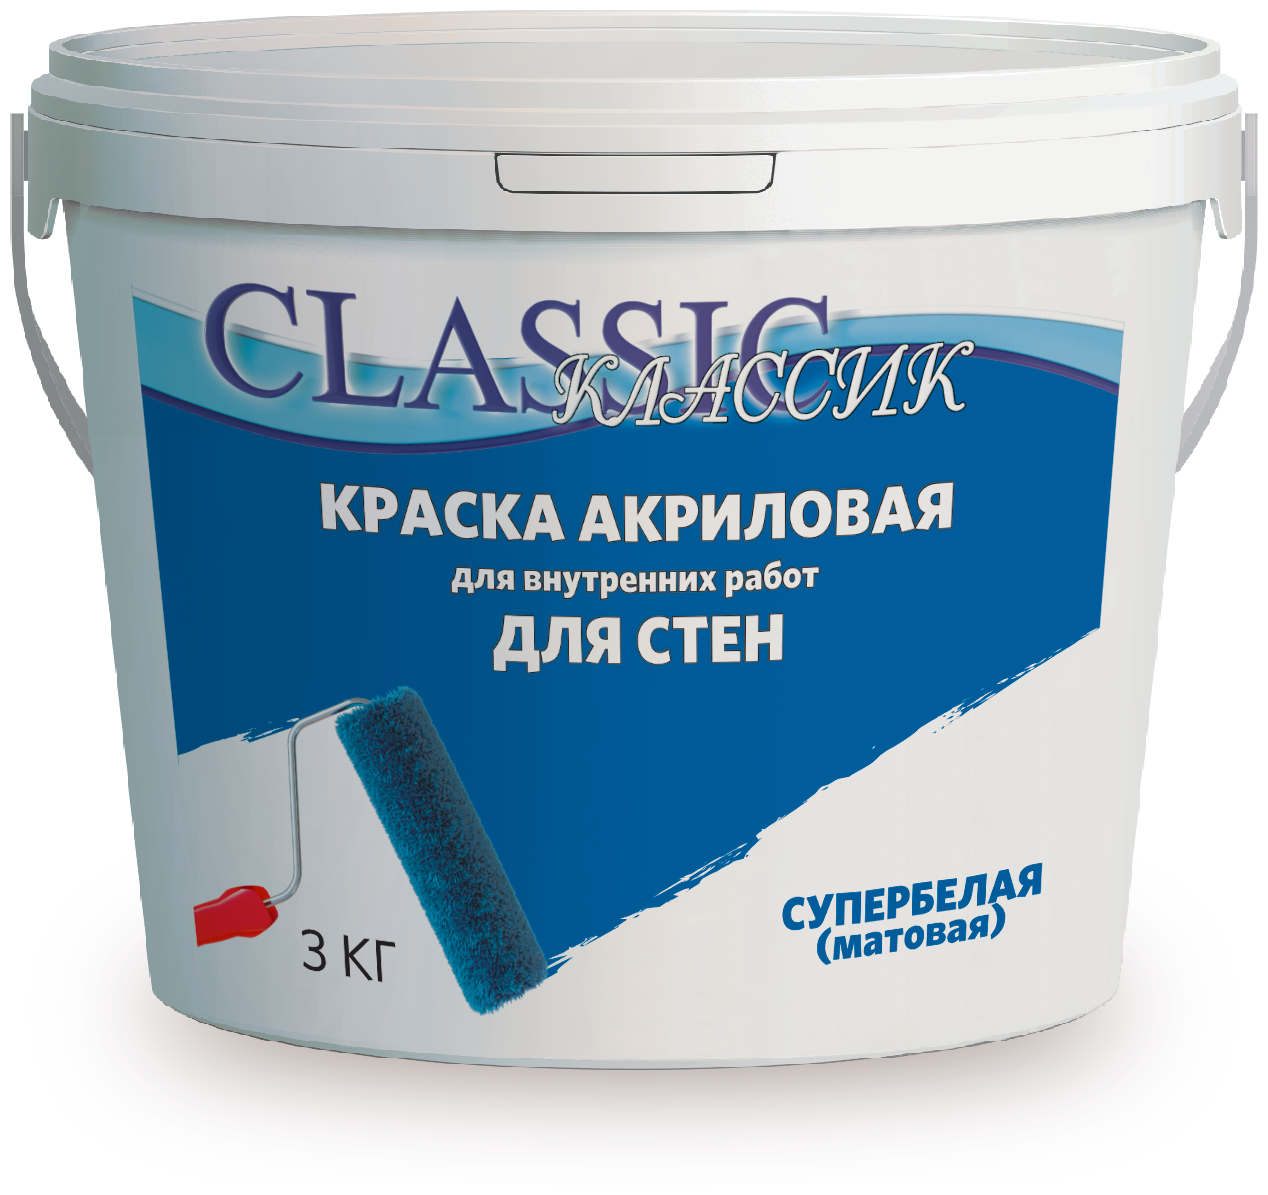 Краска акриловая для стен и потлков супербелая ( 3 кг) ТМ "CLASSIC"